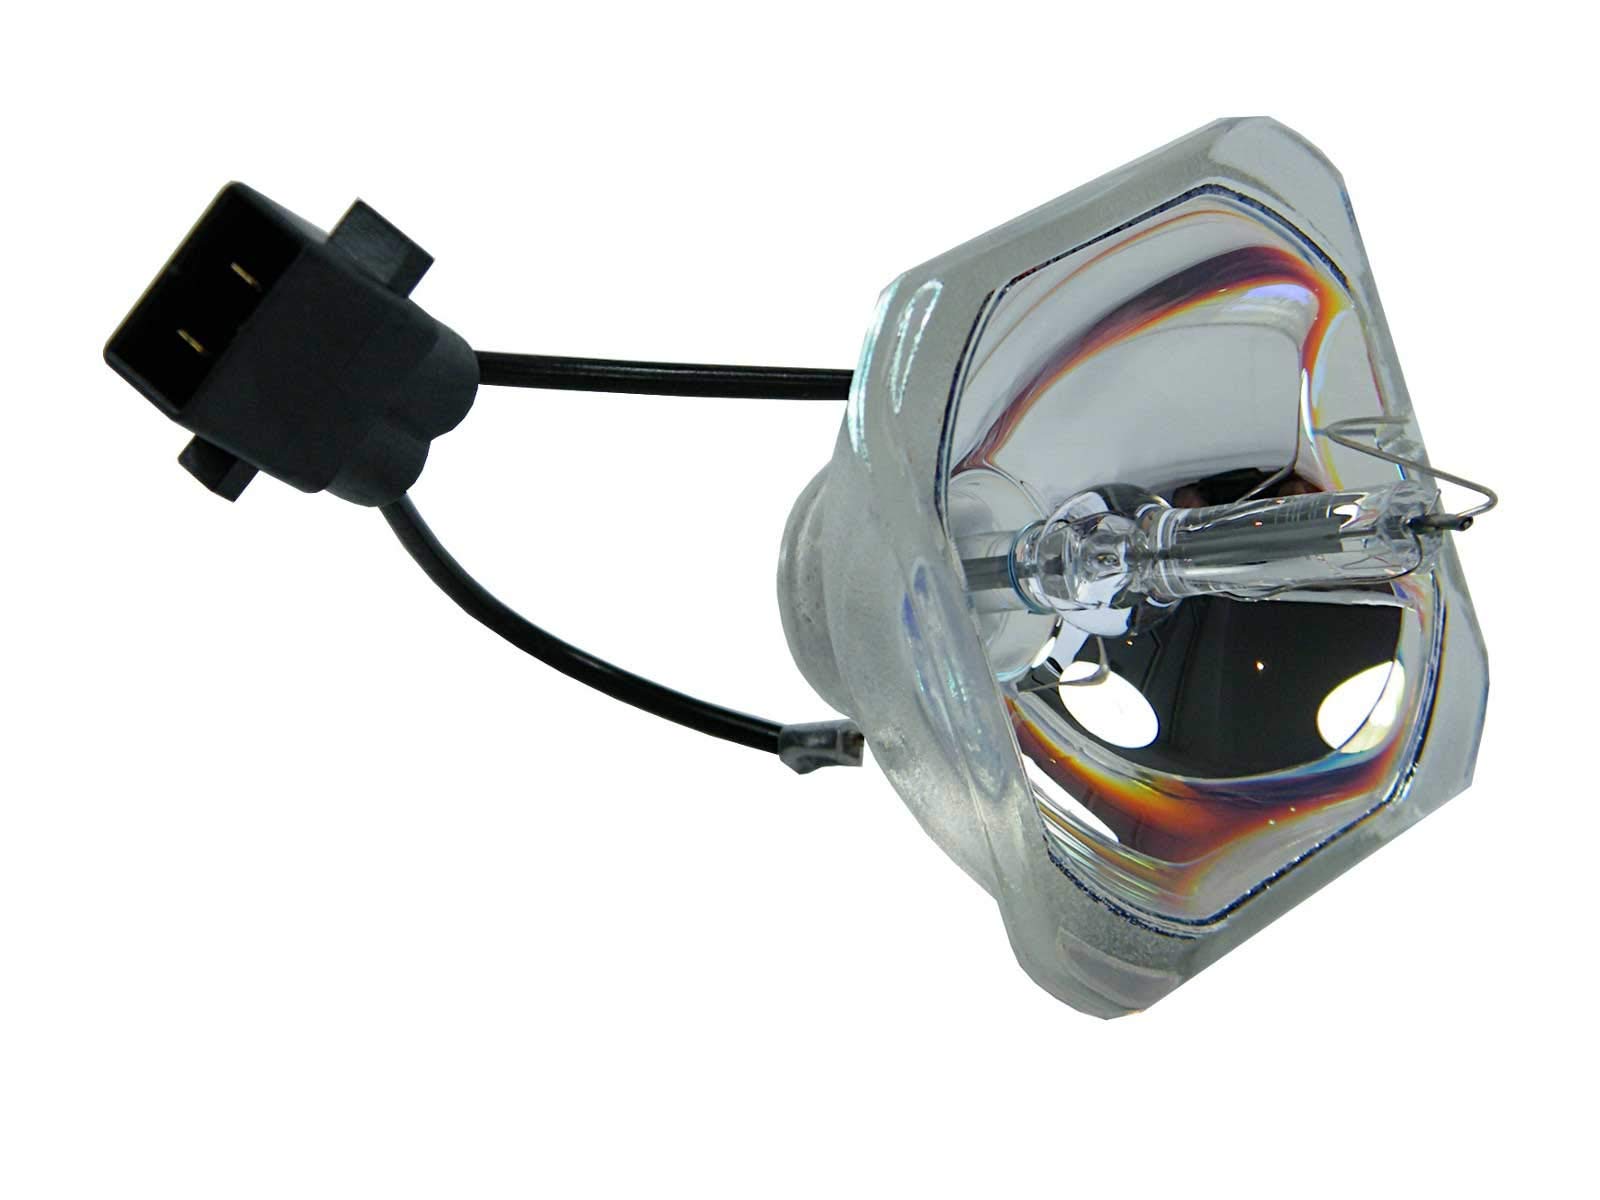 azurano Beamerlampe für EPSON ELPLP54, V13H010L54 Ersatzlampe Projektorlampe